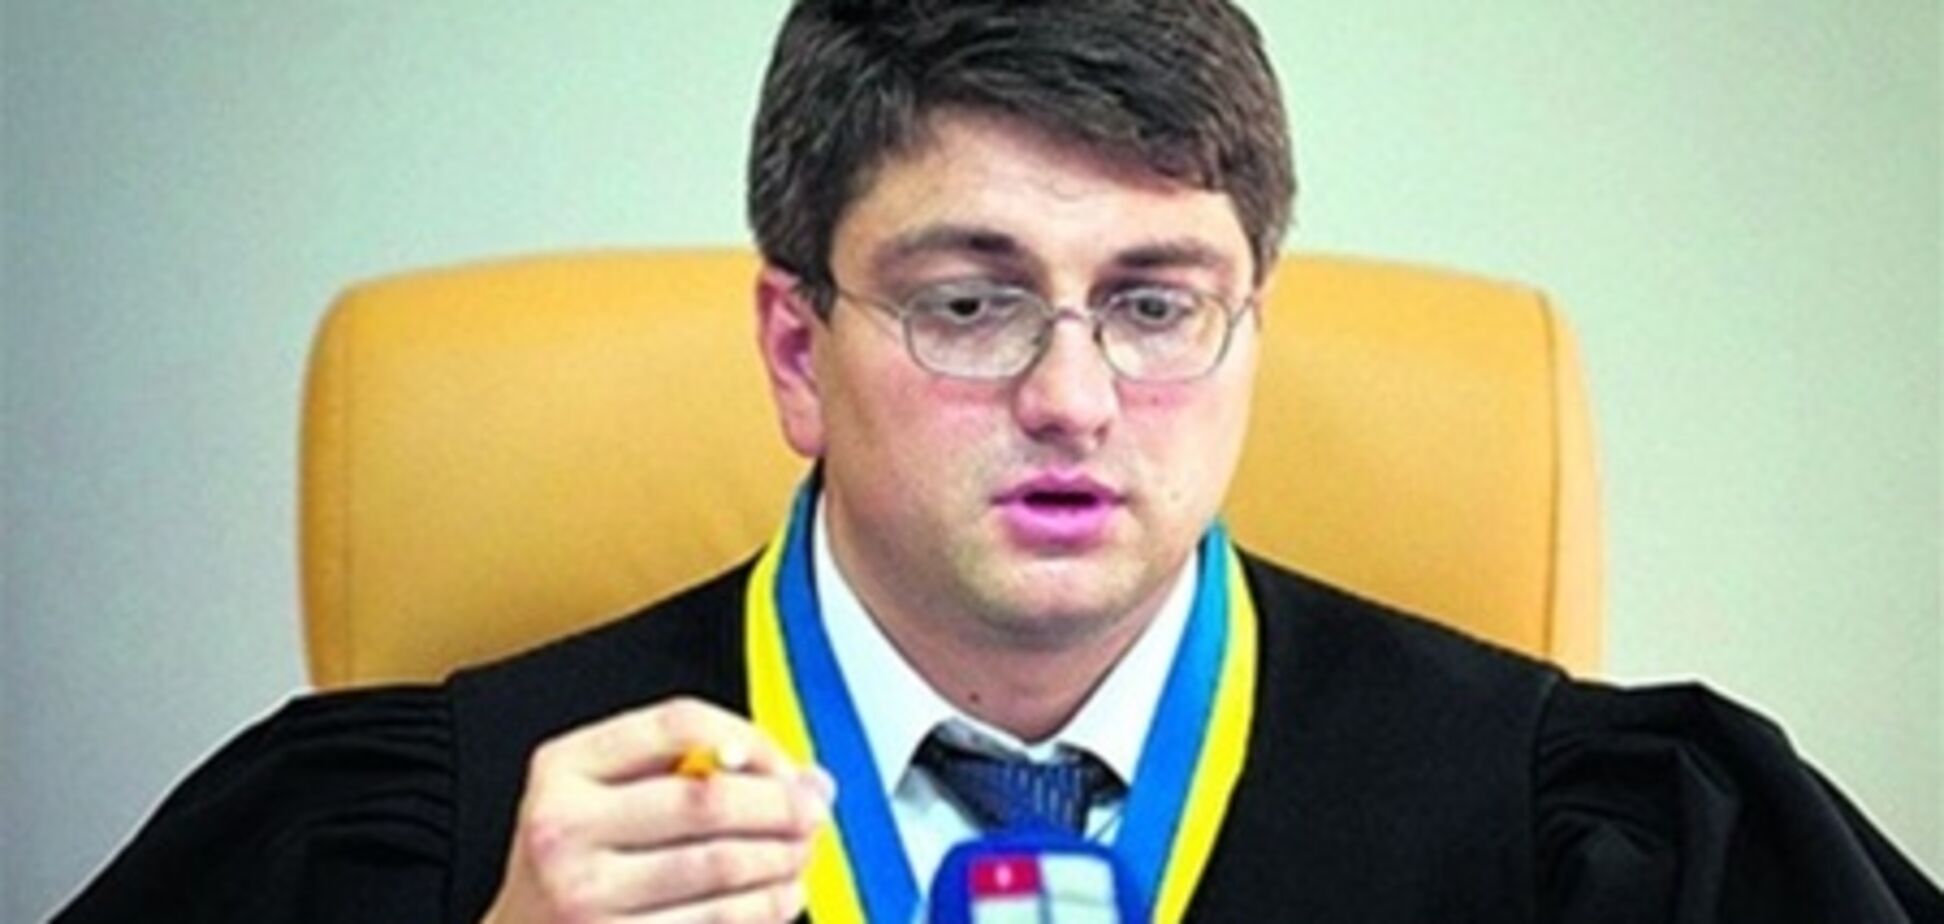 У Кірєєва запитають, ким був Власенко - 'захисником' або 'адвокатом'